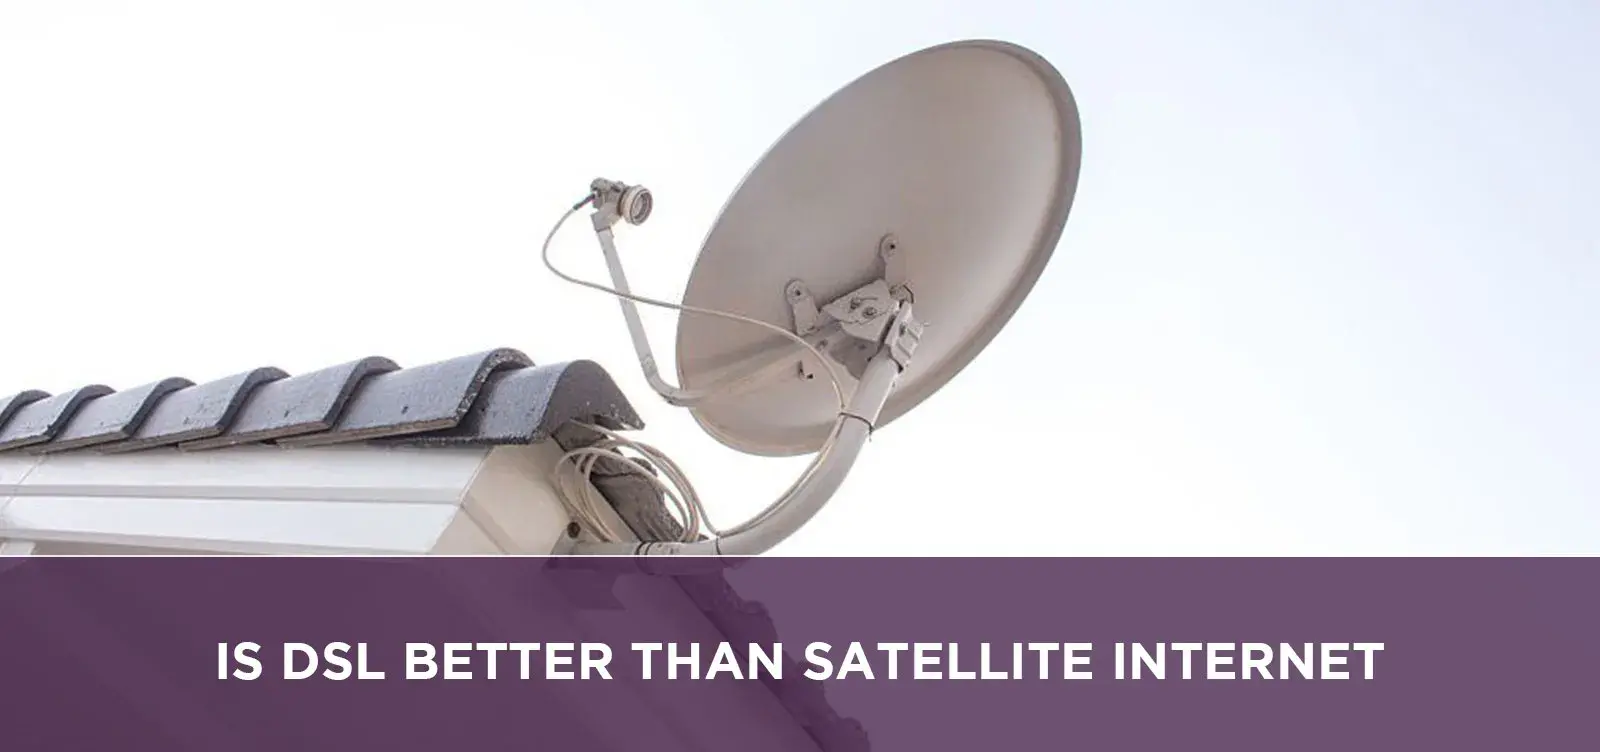 Is Dsl Better Than Satellite Internet?